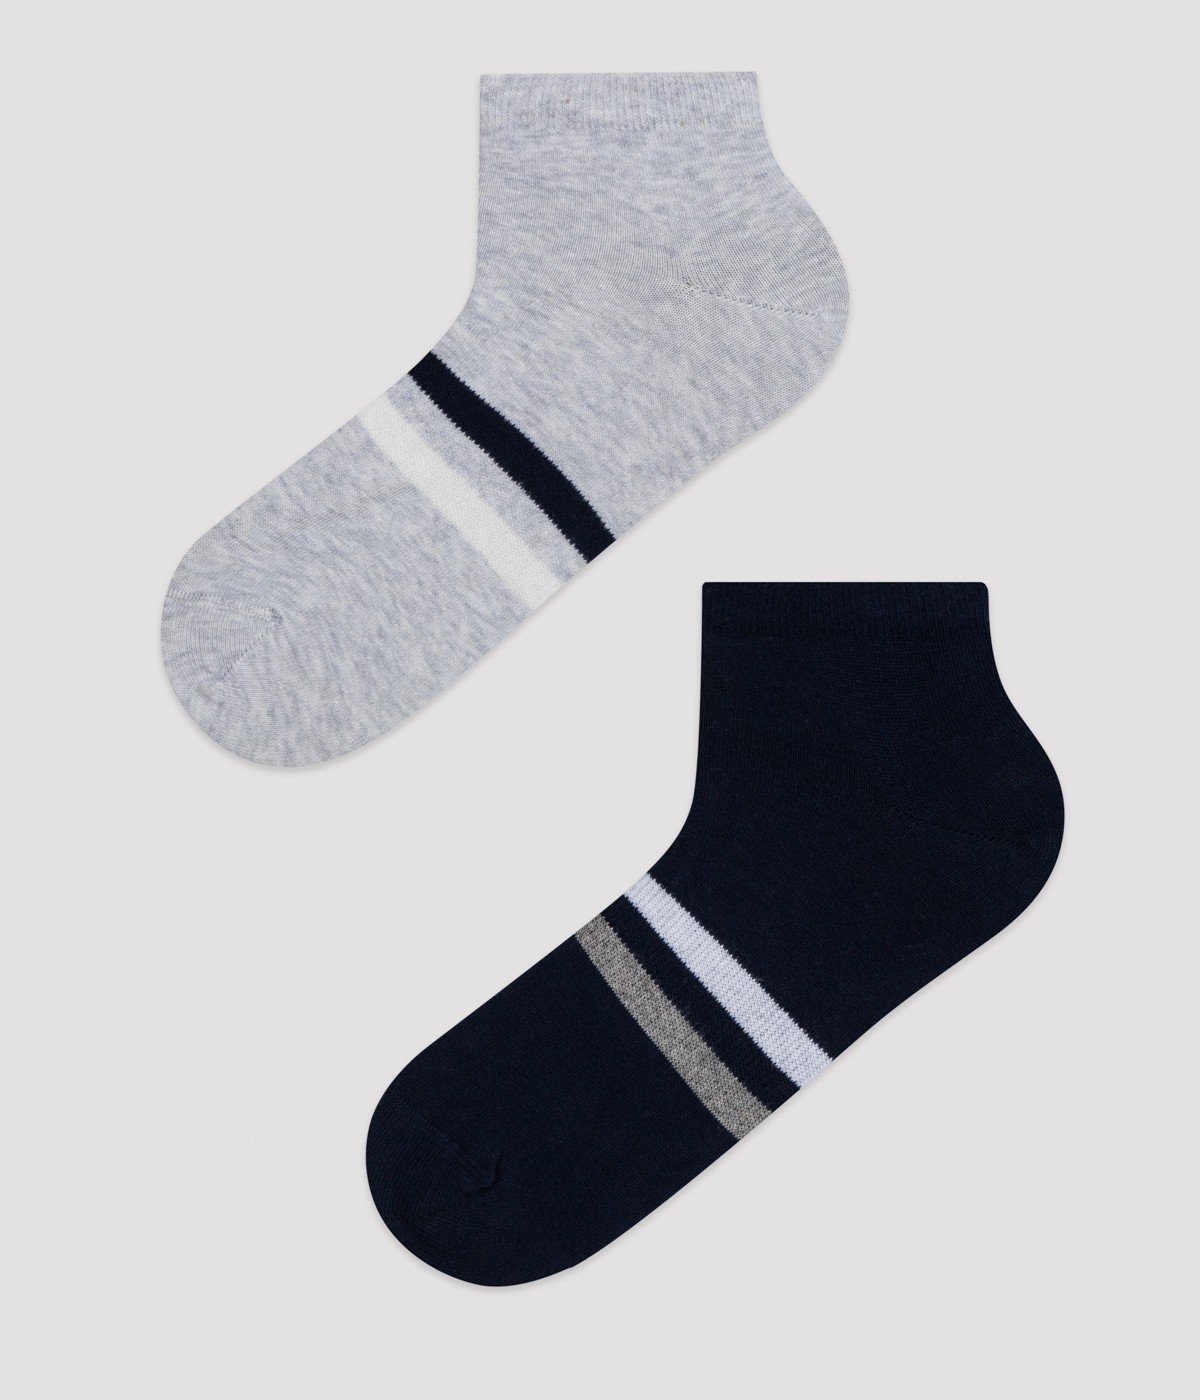 Stripe Black White 2In1 Liner Socks